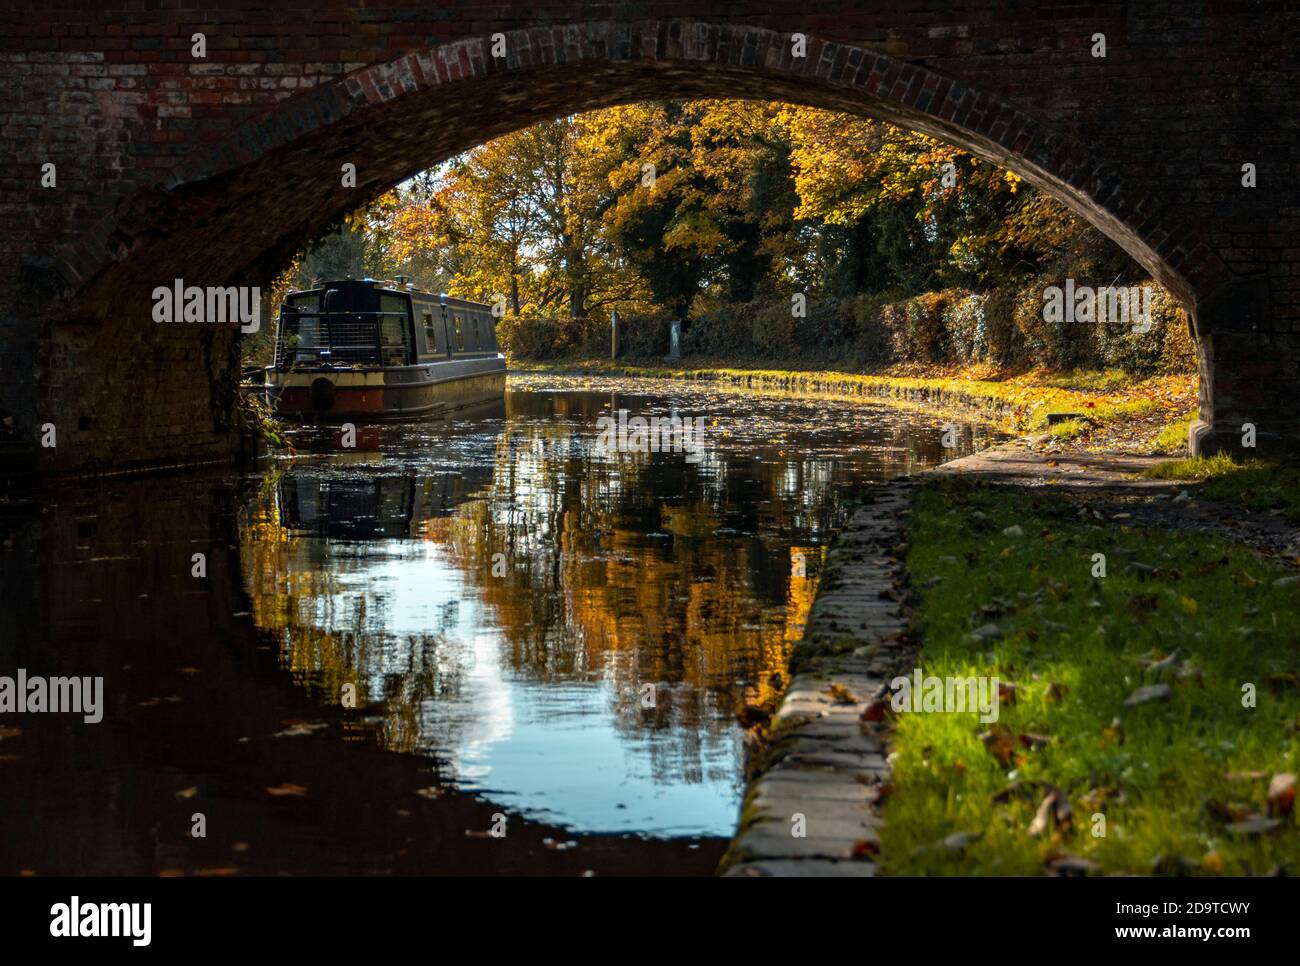 una vista de un barco estrecho bajo el arco de un puente de ladrillo a pie se refleja en el agua del canal, con colores otoñales en los árboles Foto de stock